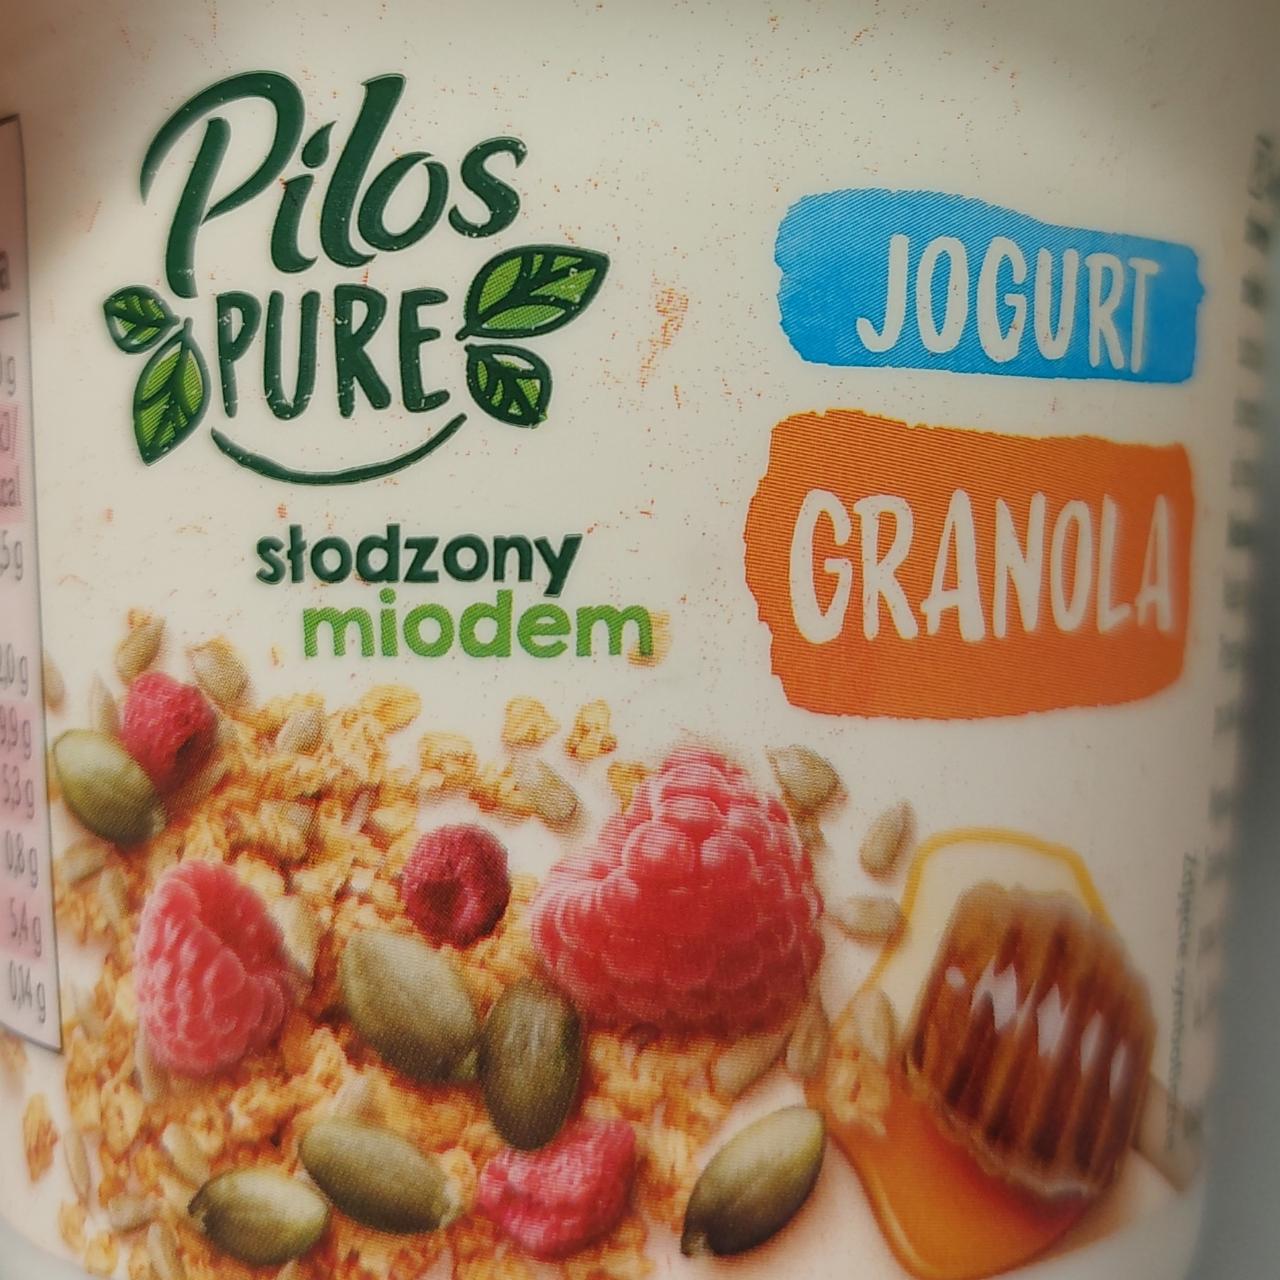 Fotografie - Jogurt granola słodzony miodem Pilos Pure